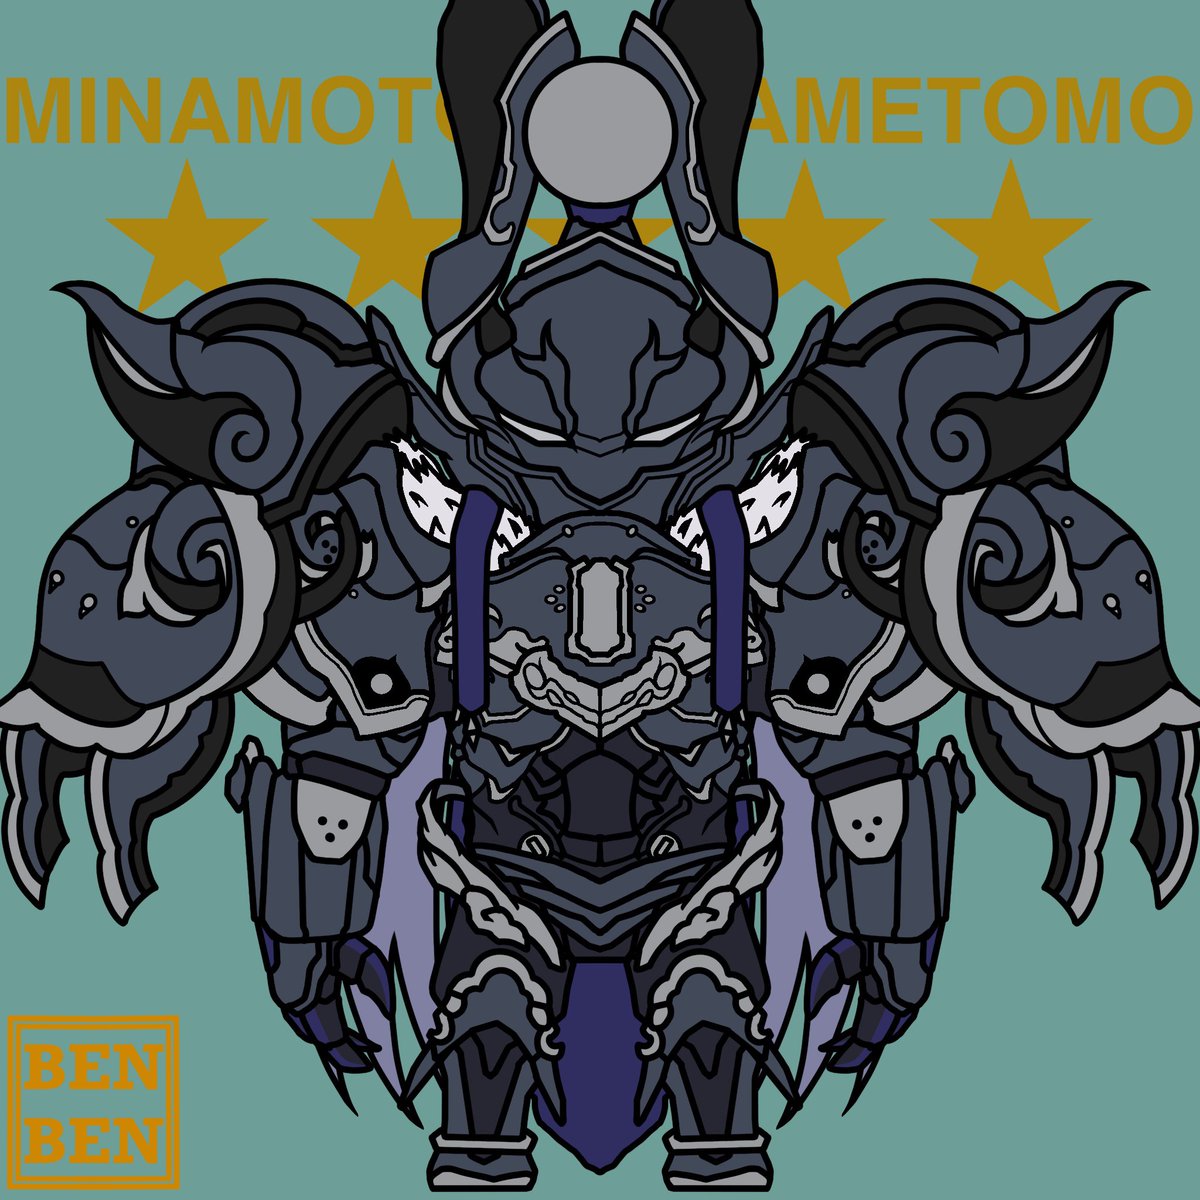 armor solo full armor horns helmet shoulder armor character name  illustration images